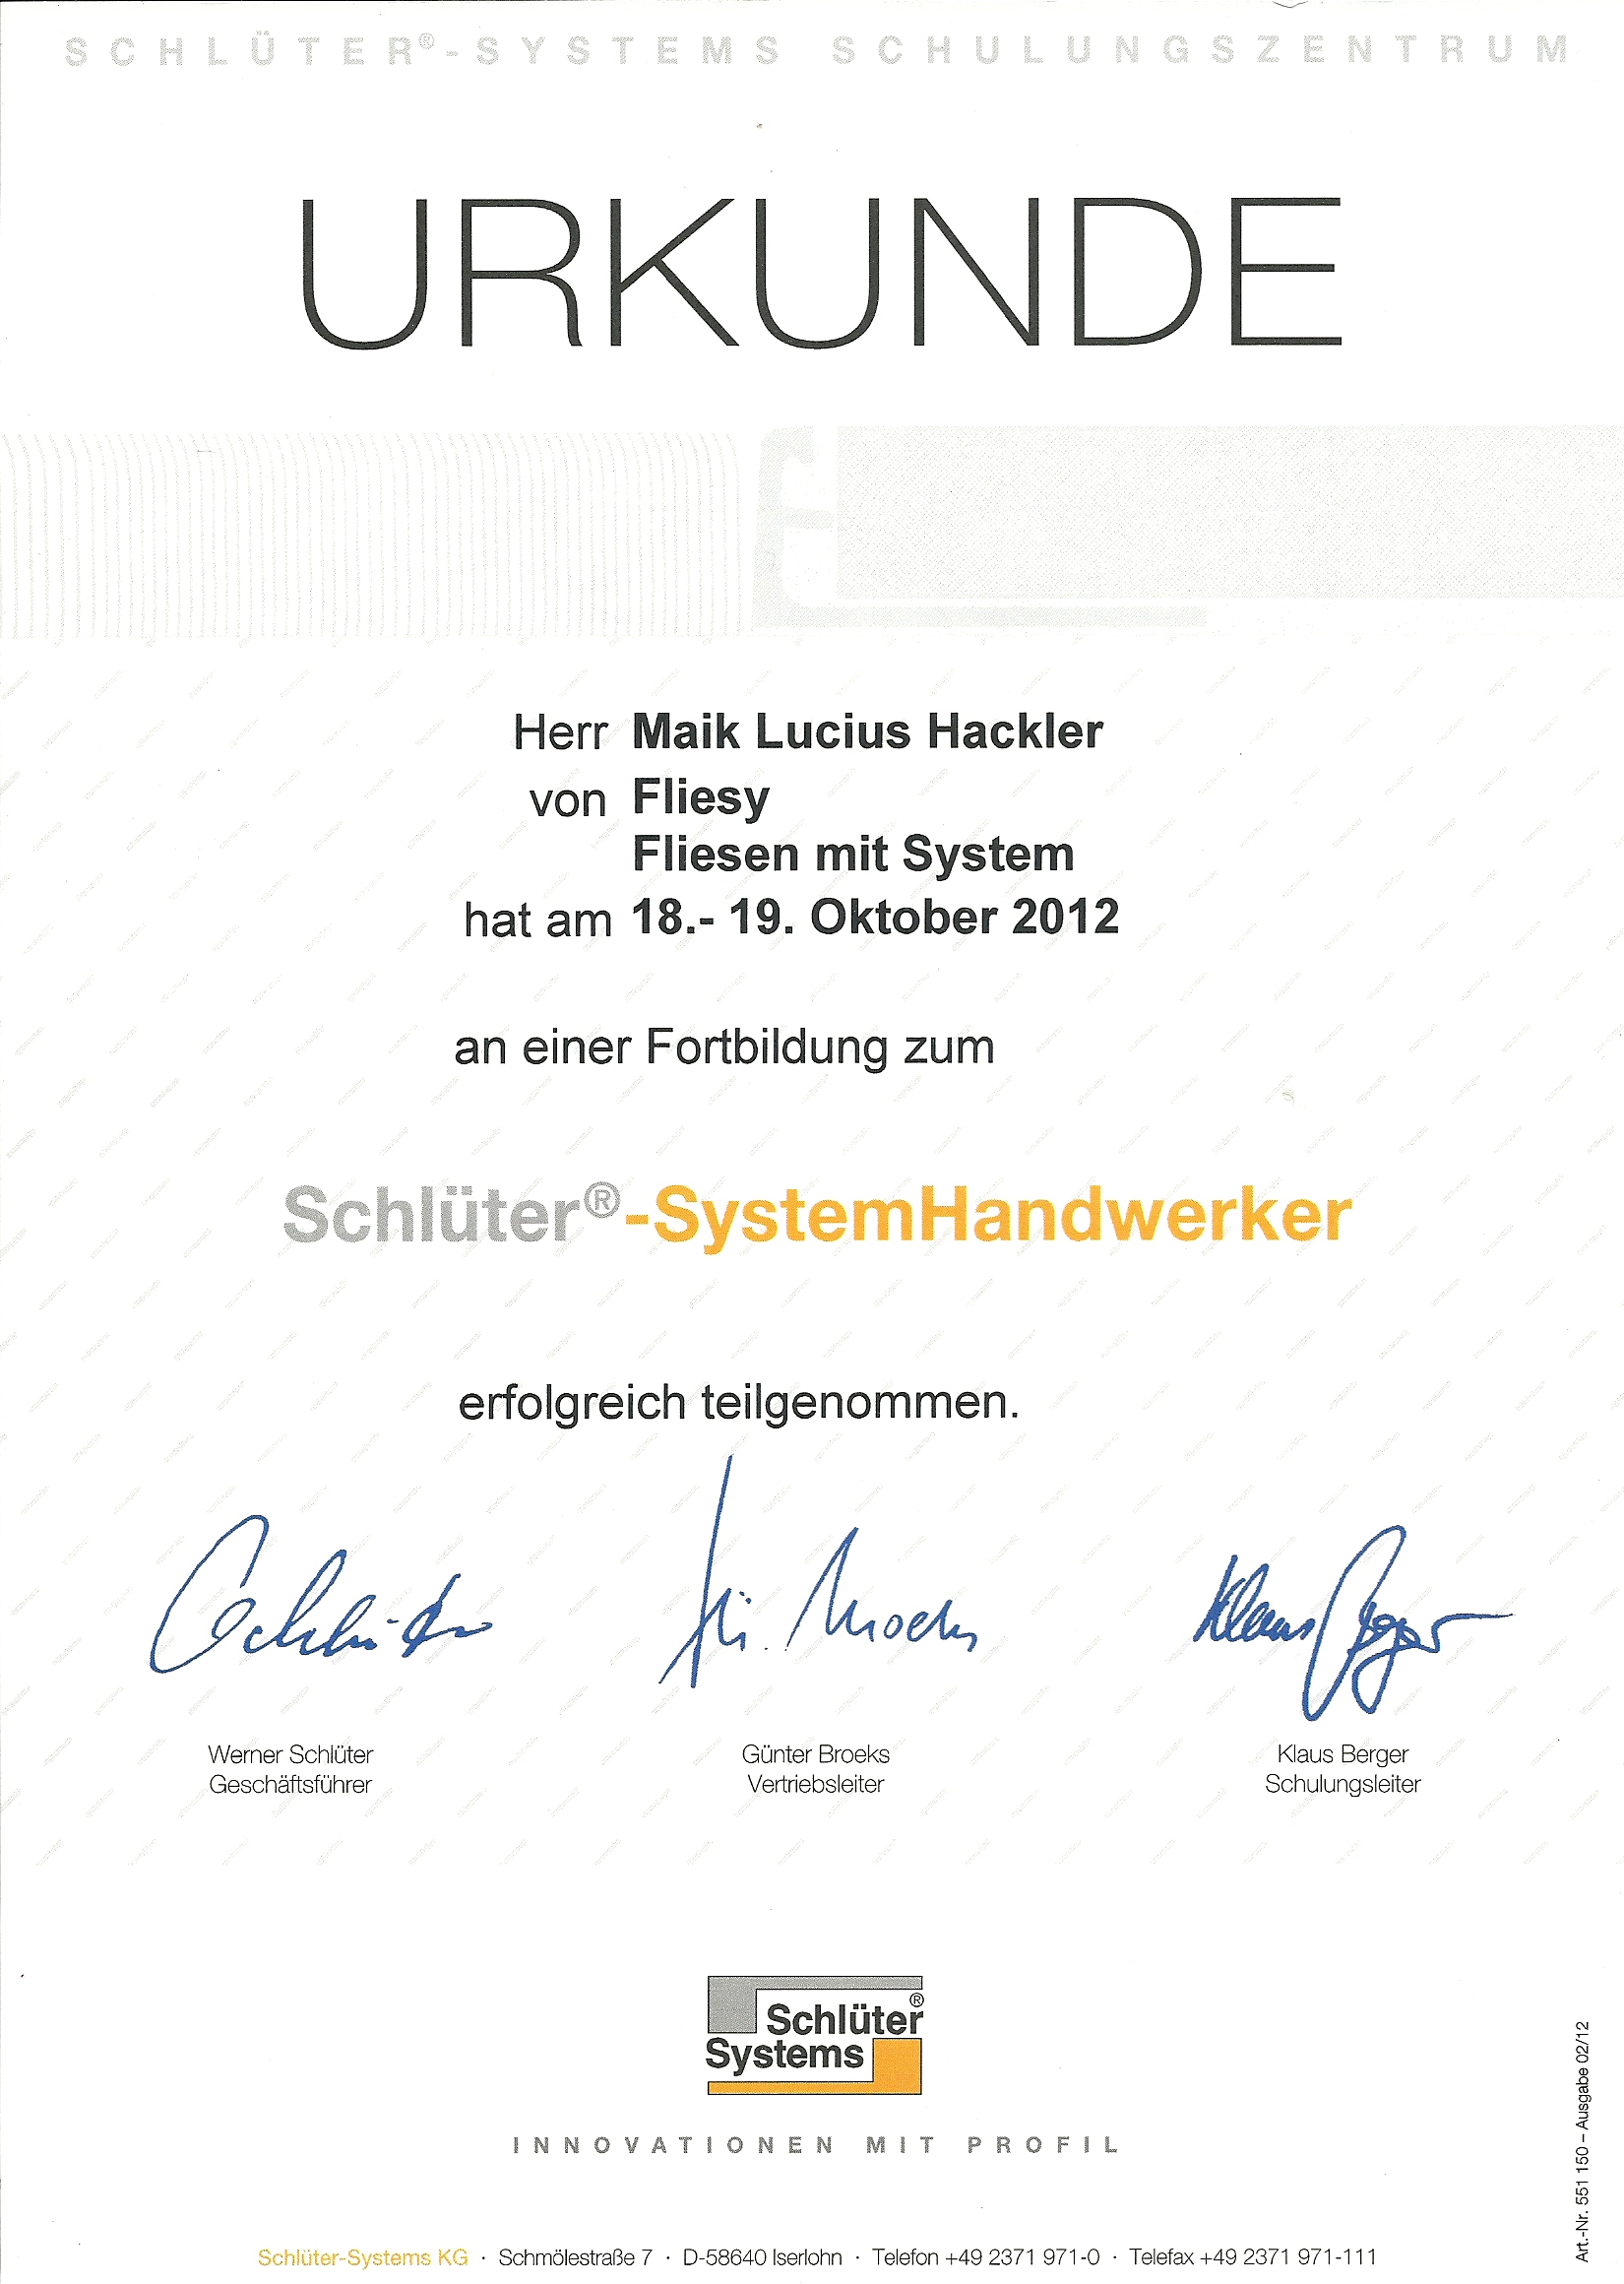 Schlüter Systemhandwerker Urkunde